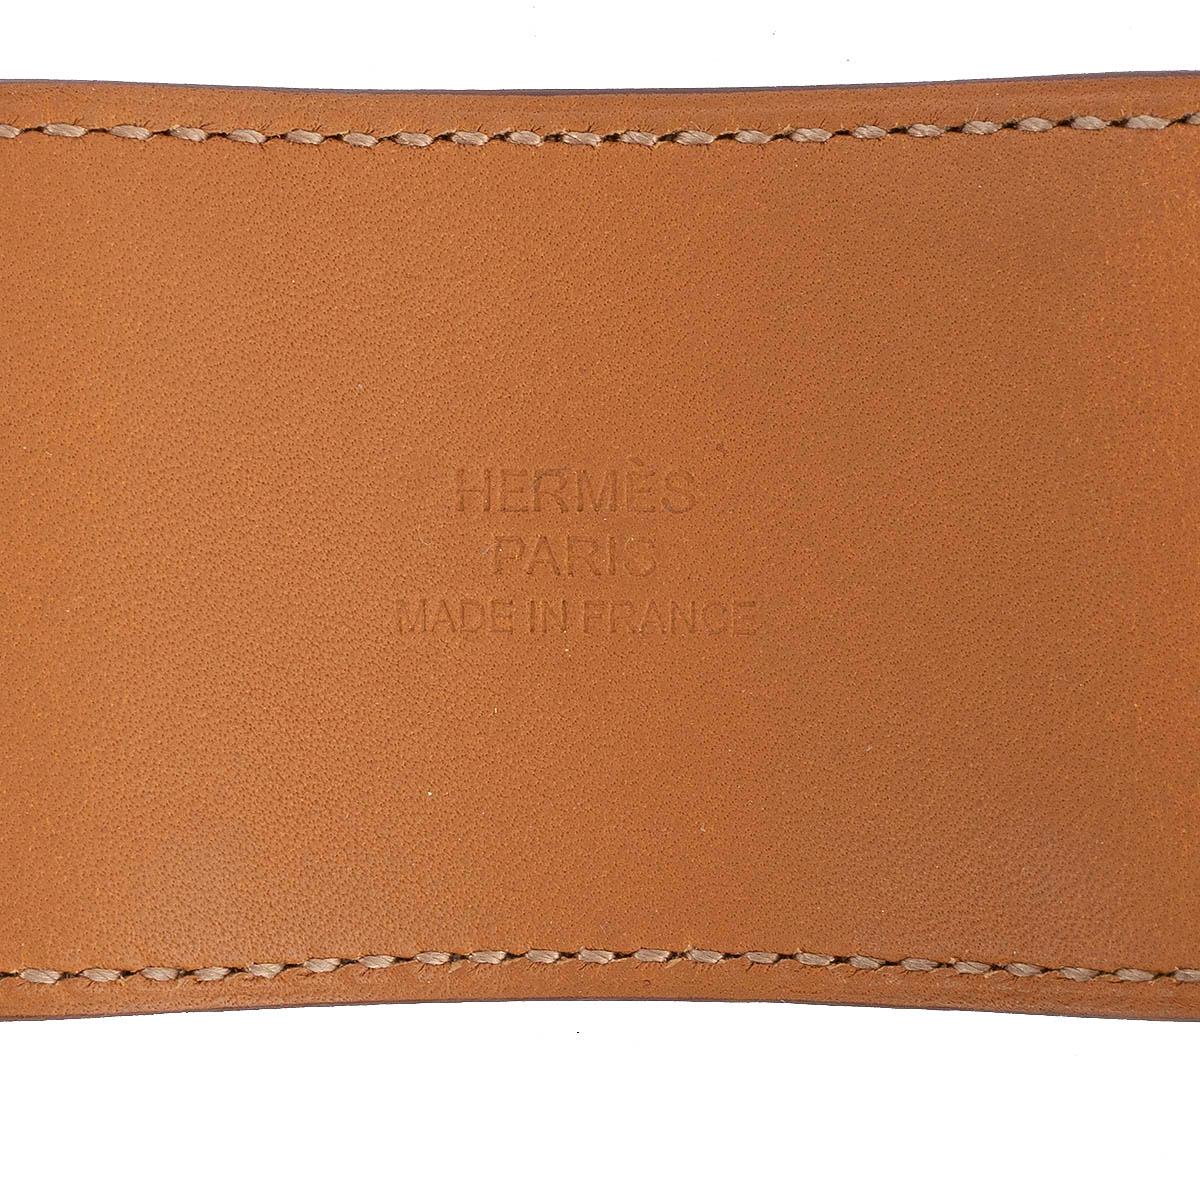 HERMES Fauve brown Barenia leather COLLIER DE CHIEN Cuff Bracelet S 2